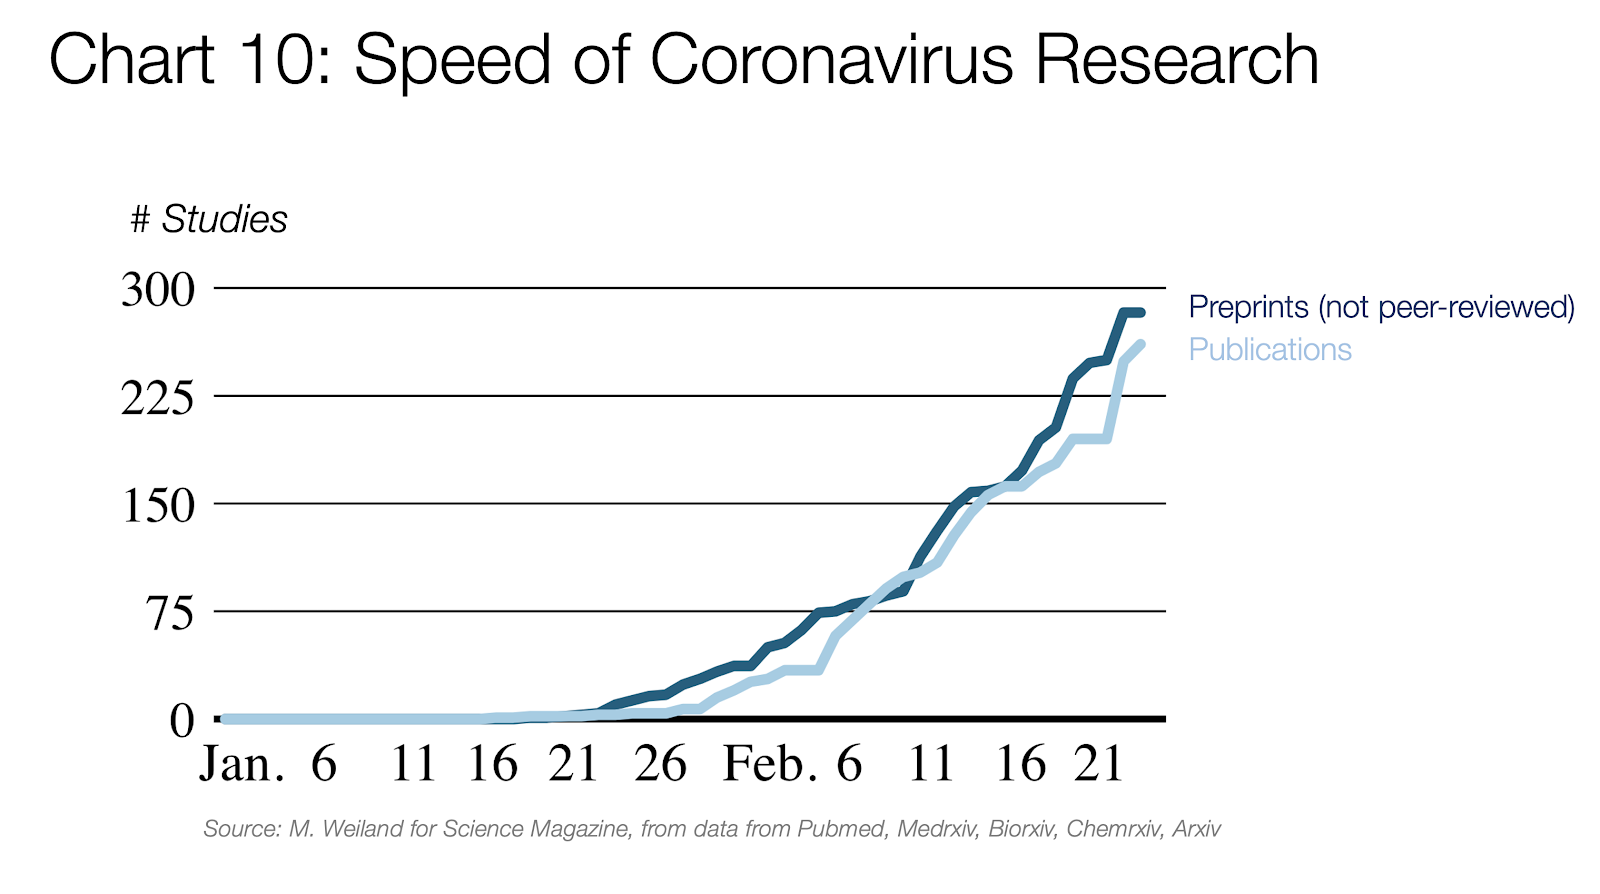 A koronavírus-kutatás sebessége